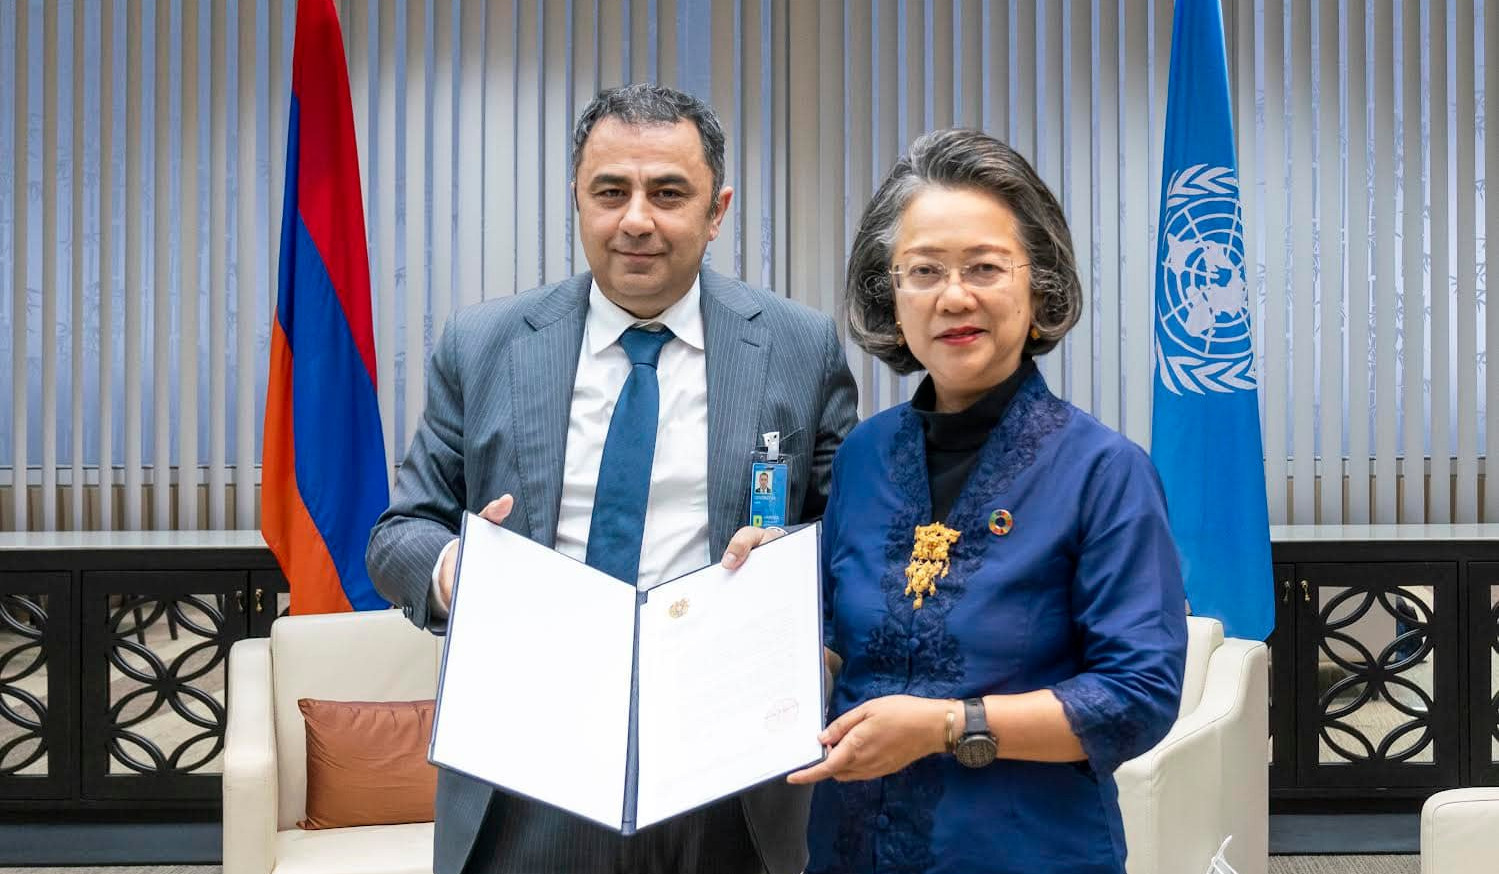 Դեսպան Գևորգյանն ու ՄԱԿ-ի հանձնաժողովի գործադիր քարտուղարն անդրադարձել են «Խաղաղության խաչմերուկ» ծրագրին